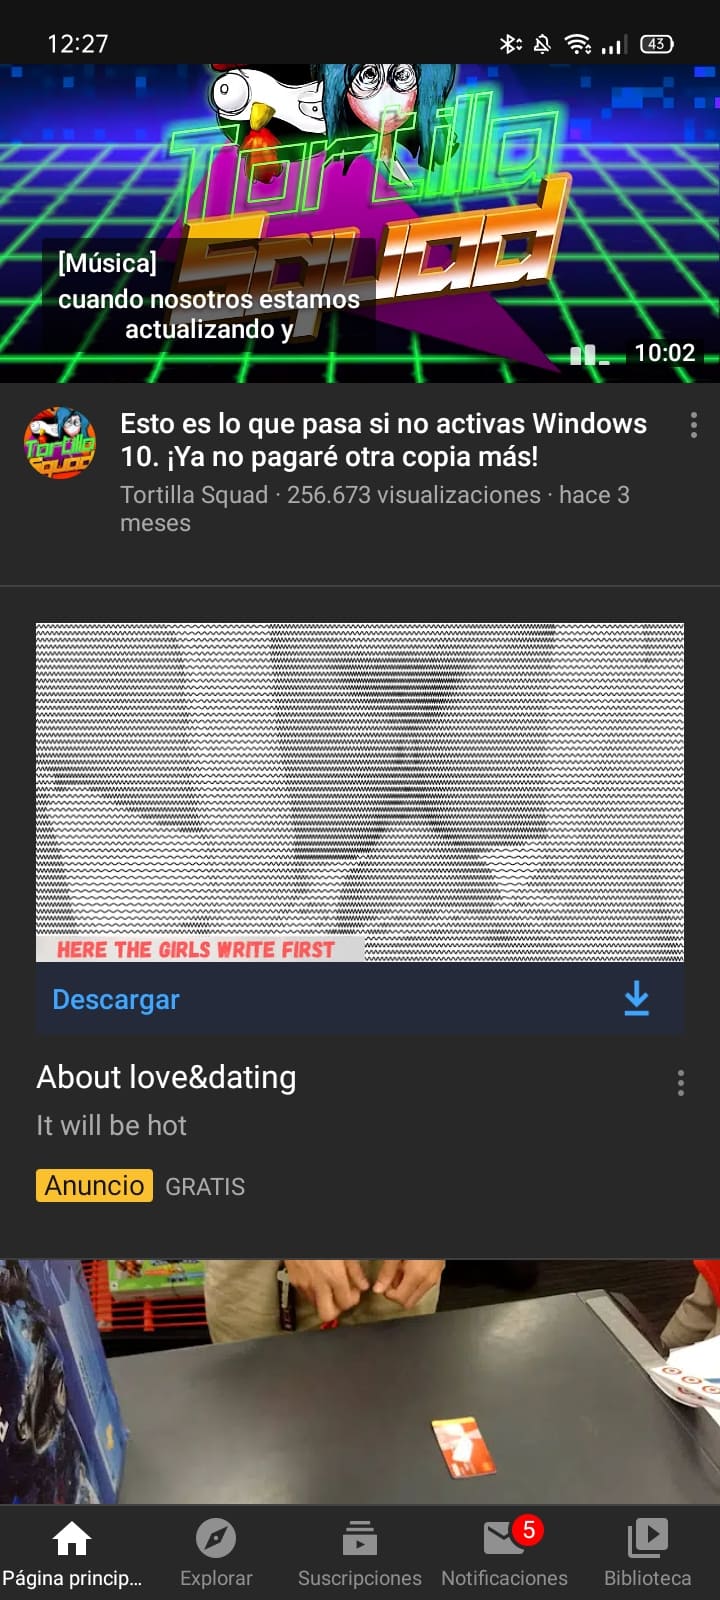 YouTube-pornografia-anuncios